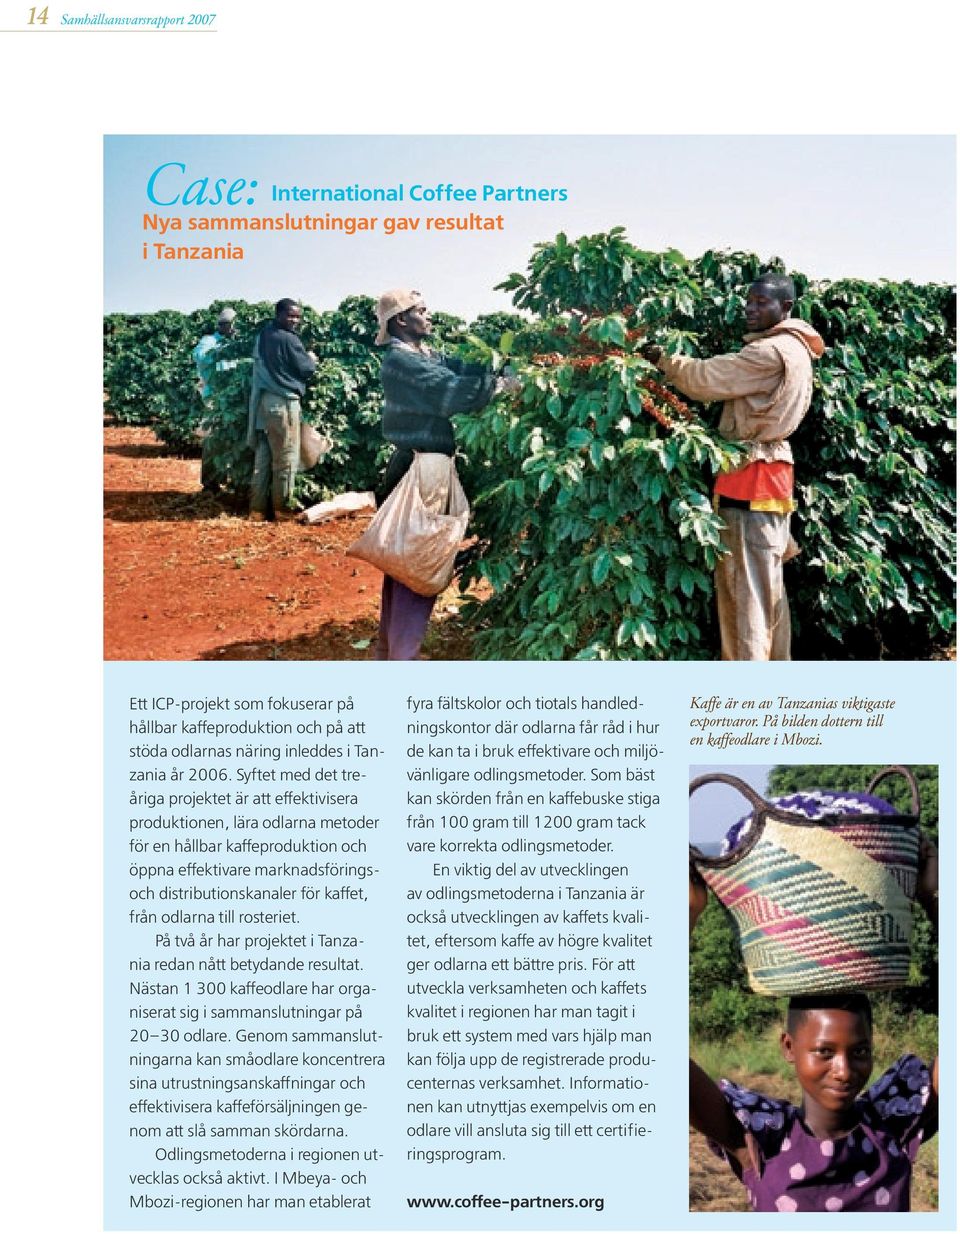 Syftet med det treåriga projektet är att effektivisera produktionen, lära odlarna metoder för en hållbar kaffeproduktion och öppna effektivare marknadsföringsoch distributionskanaler för kaffet, från